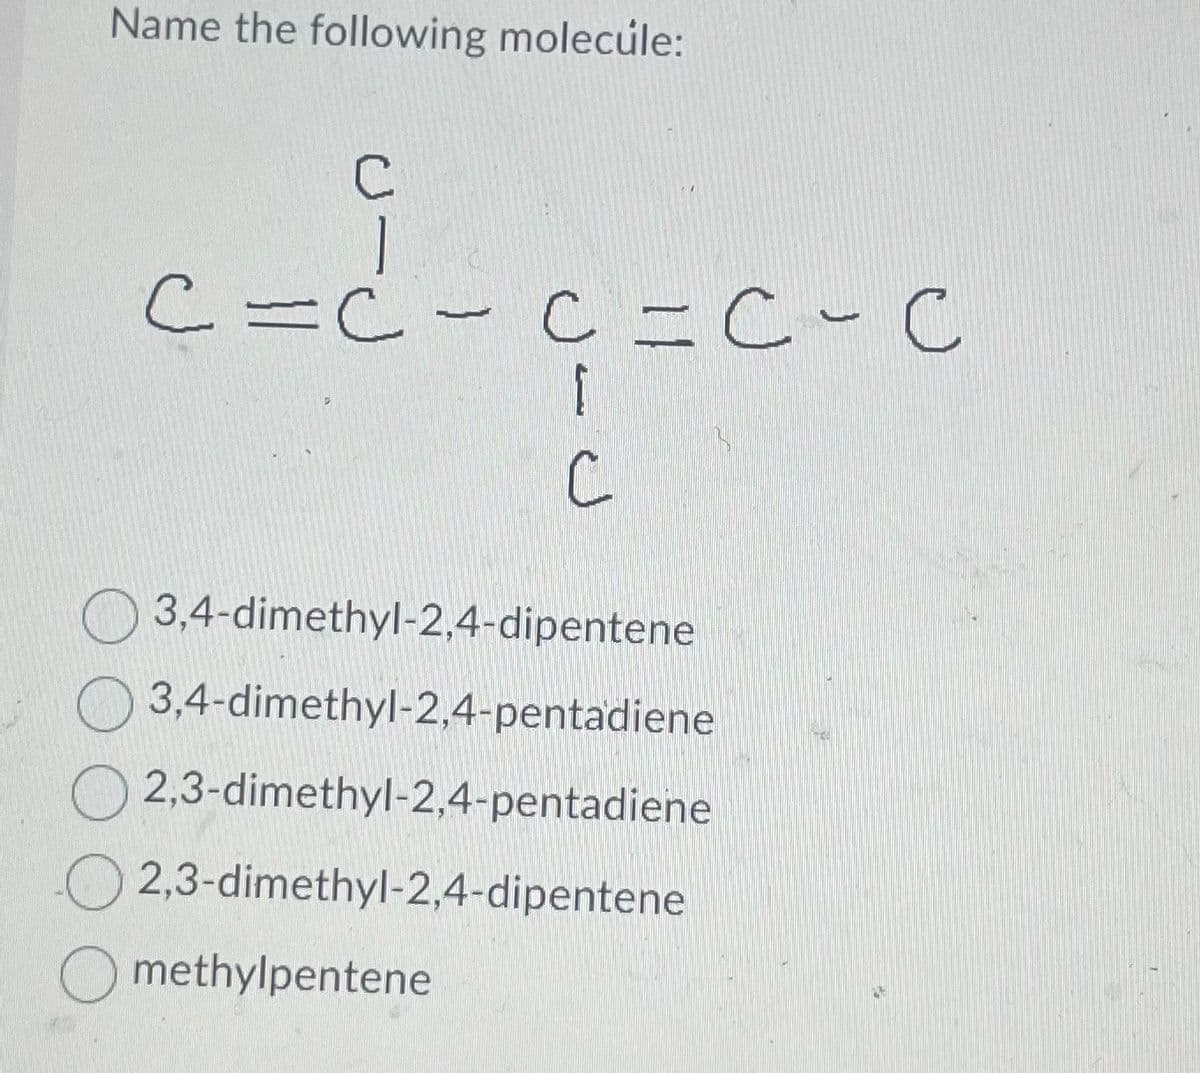 Name the following molecule:
C
c=d-
C = C - C = C-C
G=C-C
C
3,4-dimethyl-2,4-dipentene
3,4-dimethyl-2,4-pentadiene
2,3-dimethyl-2,4-pentadiene
2,3-dimethyl-2,4-dipentene
Omethylpentene
TEA
M